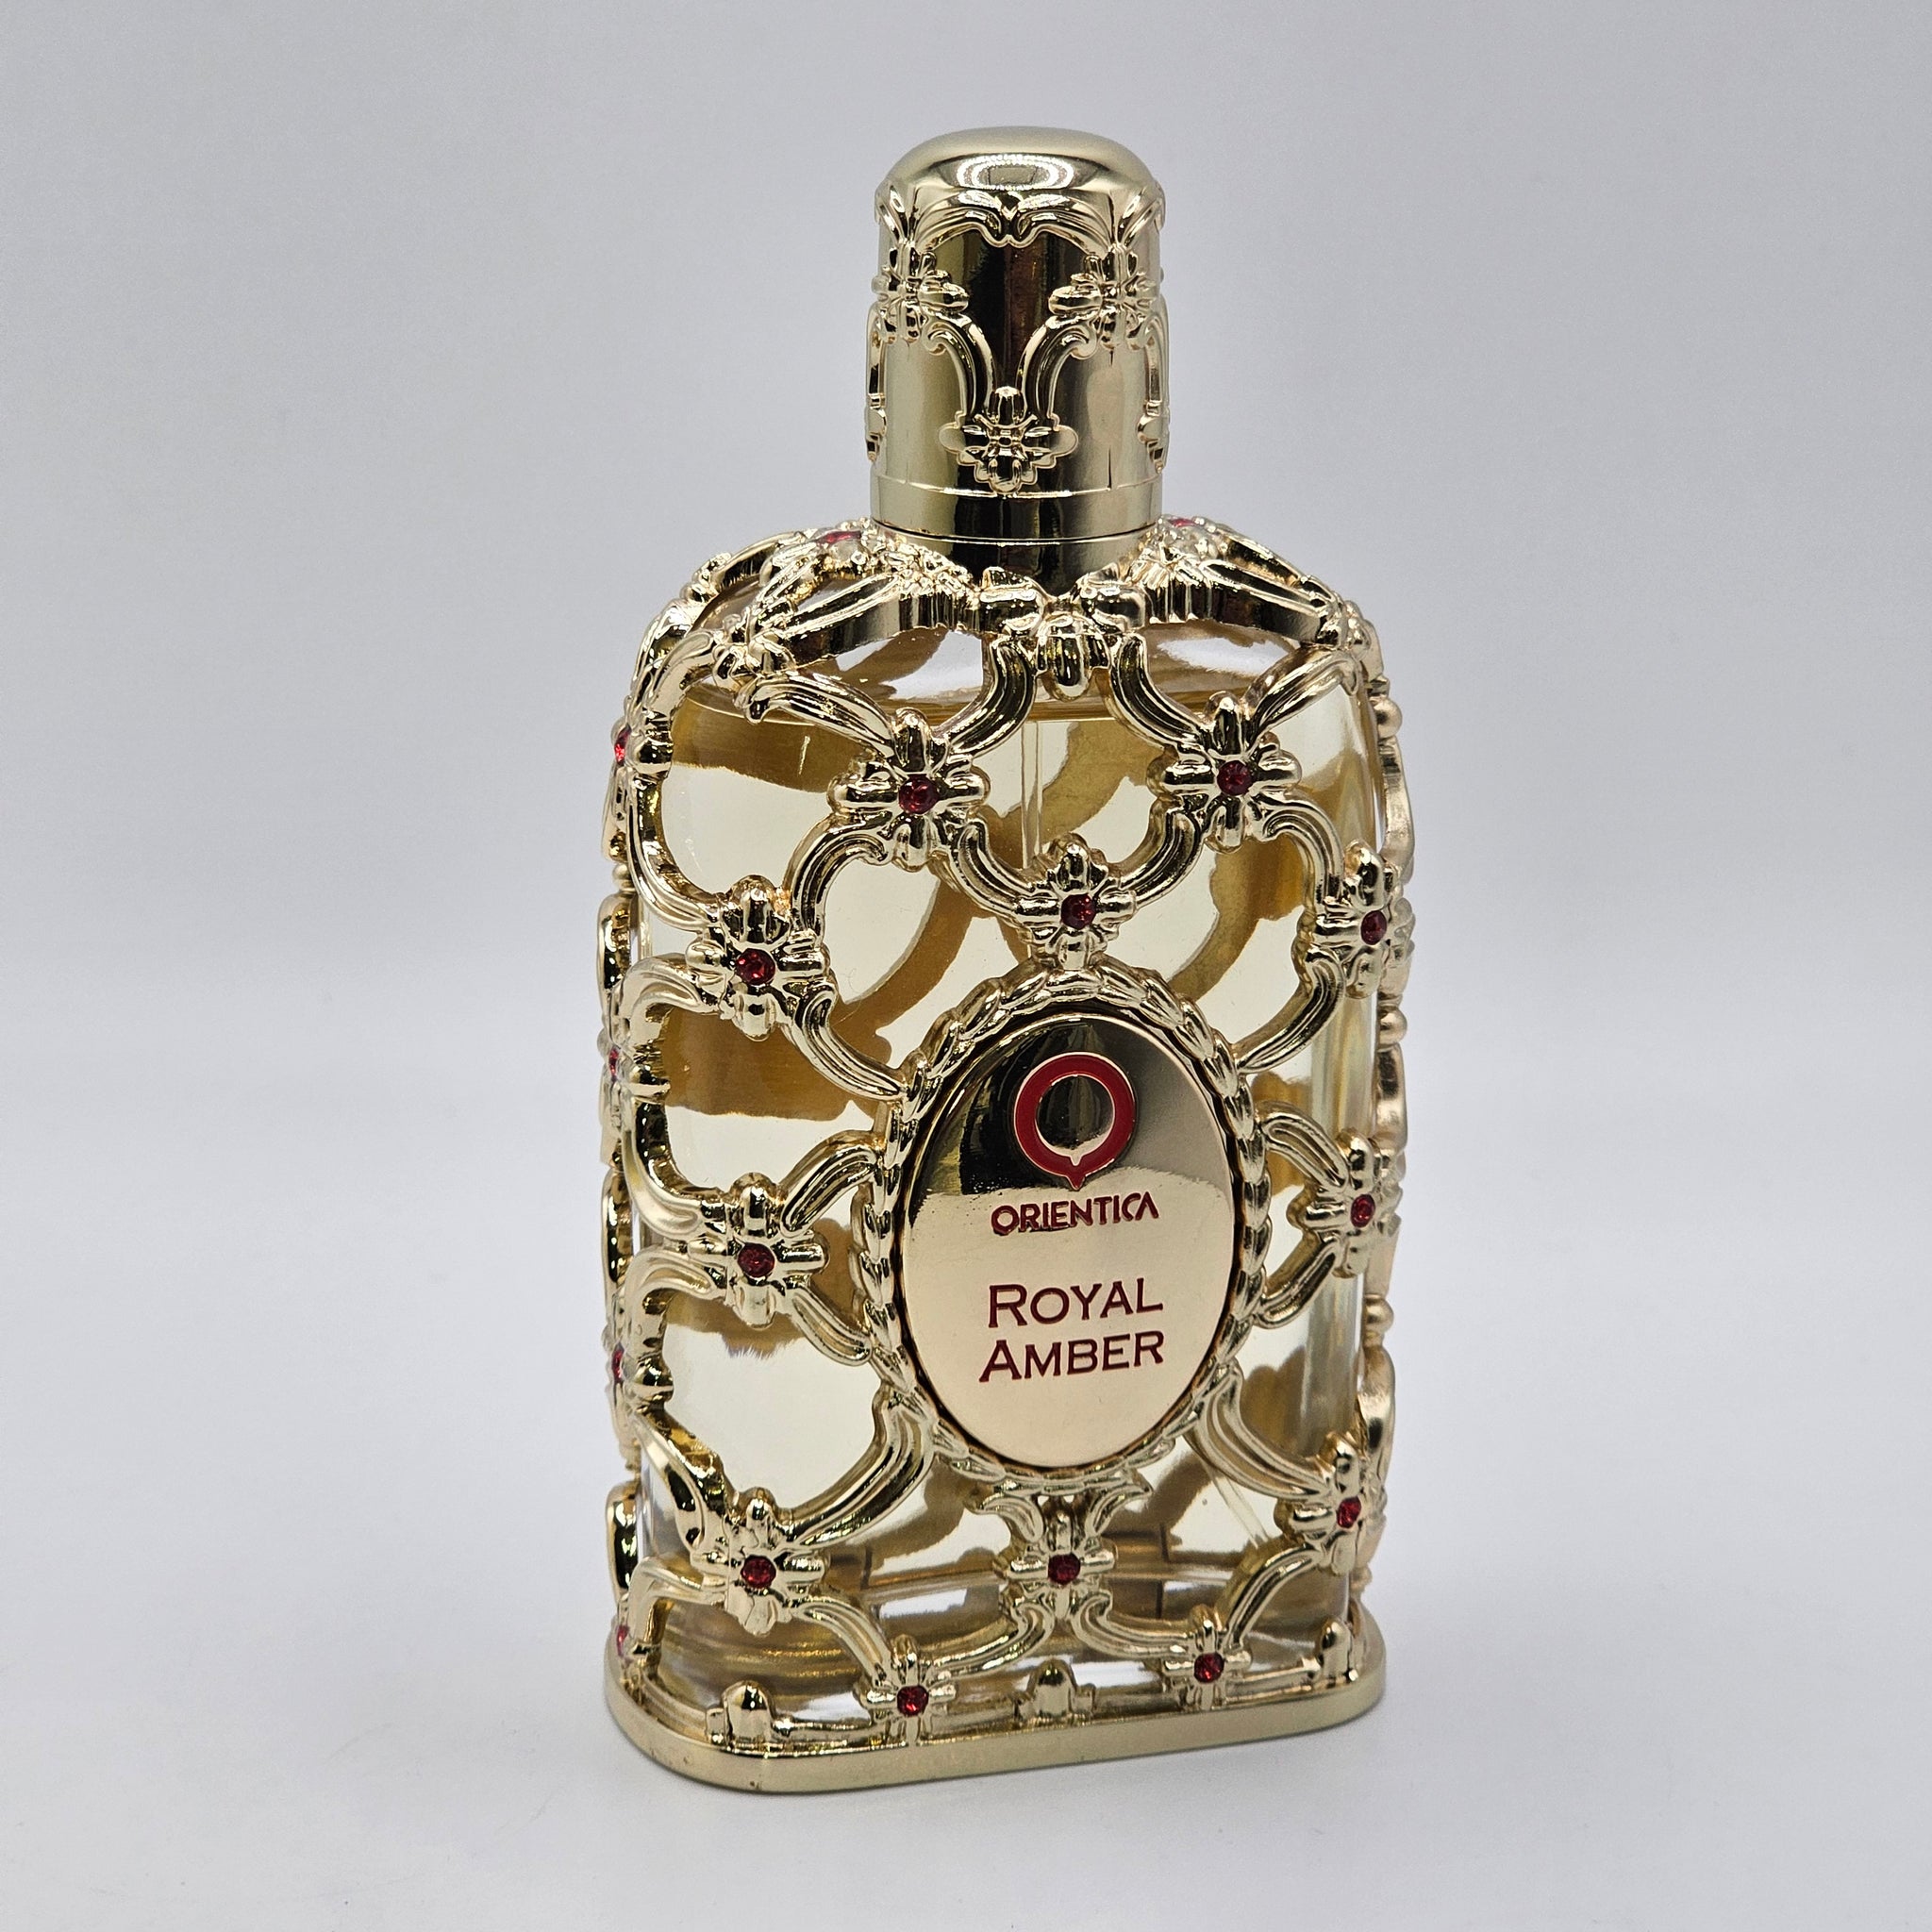 Orientica Royal Amber Luxury Collection Eau De Parfum Unisex 2.7fl Oz